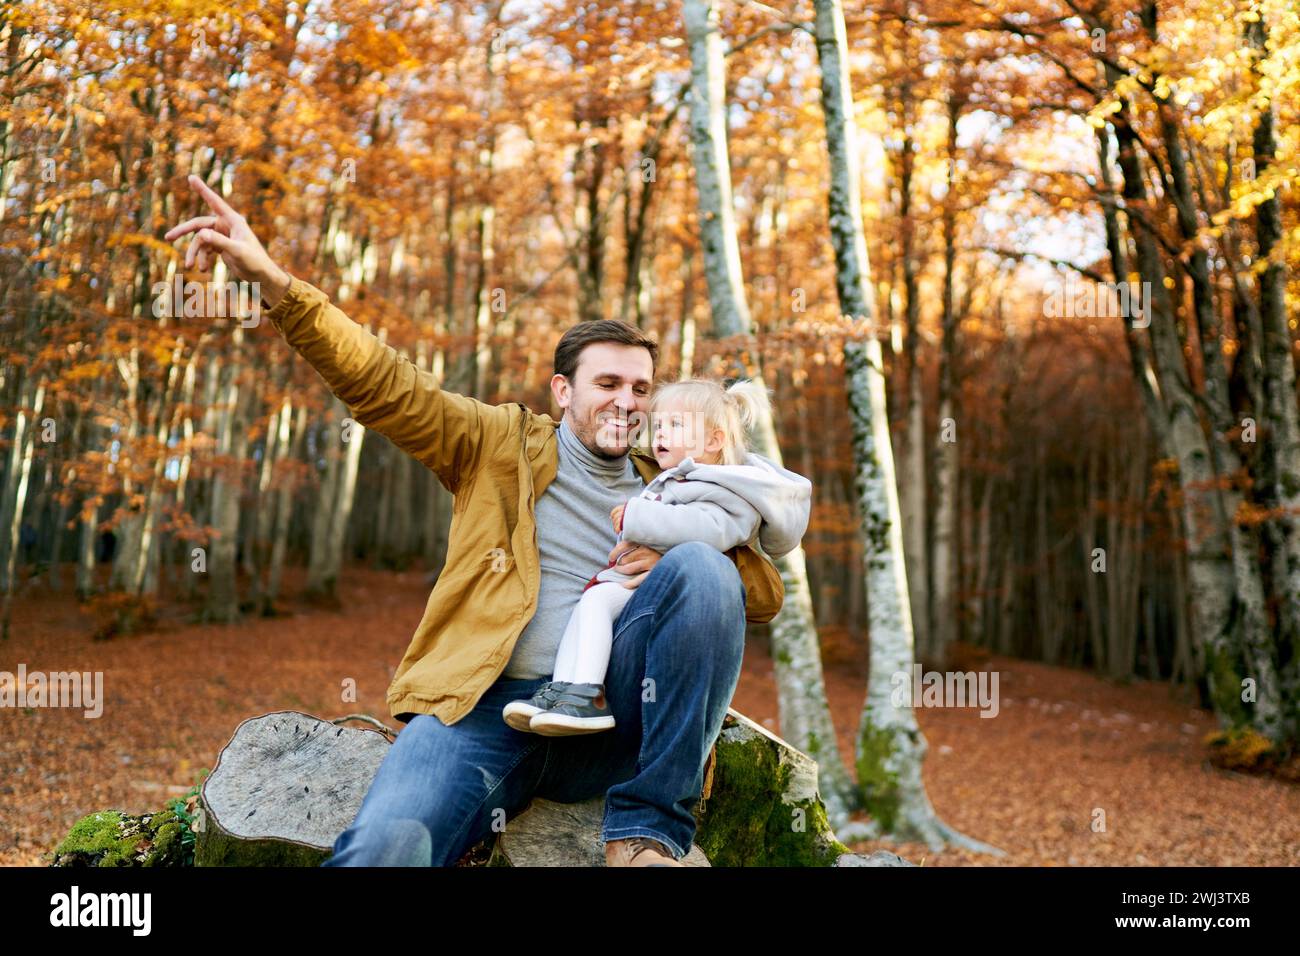 Papa souriant avec une petite fille à genoux assis sur une souche et pointe son doigt vers un arbre Banque D'Images